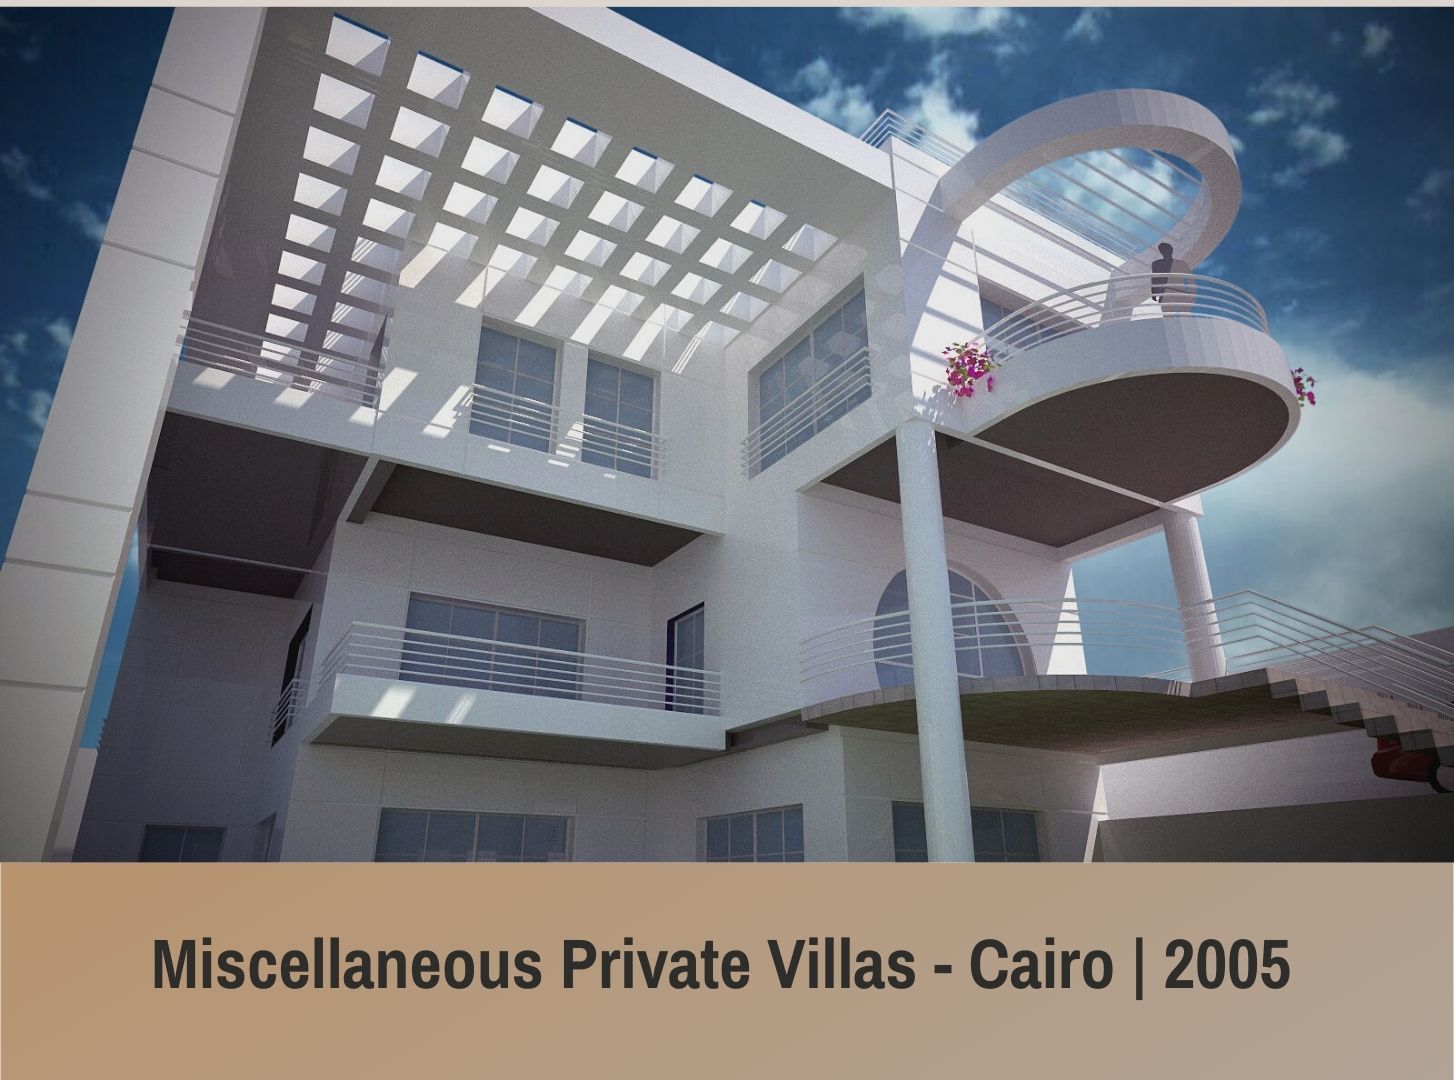 Miscellaneous Private Villas